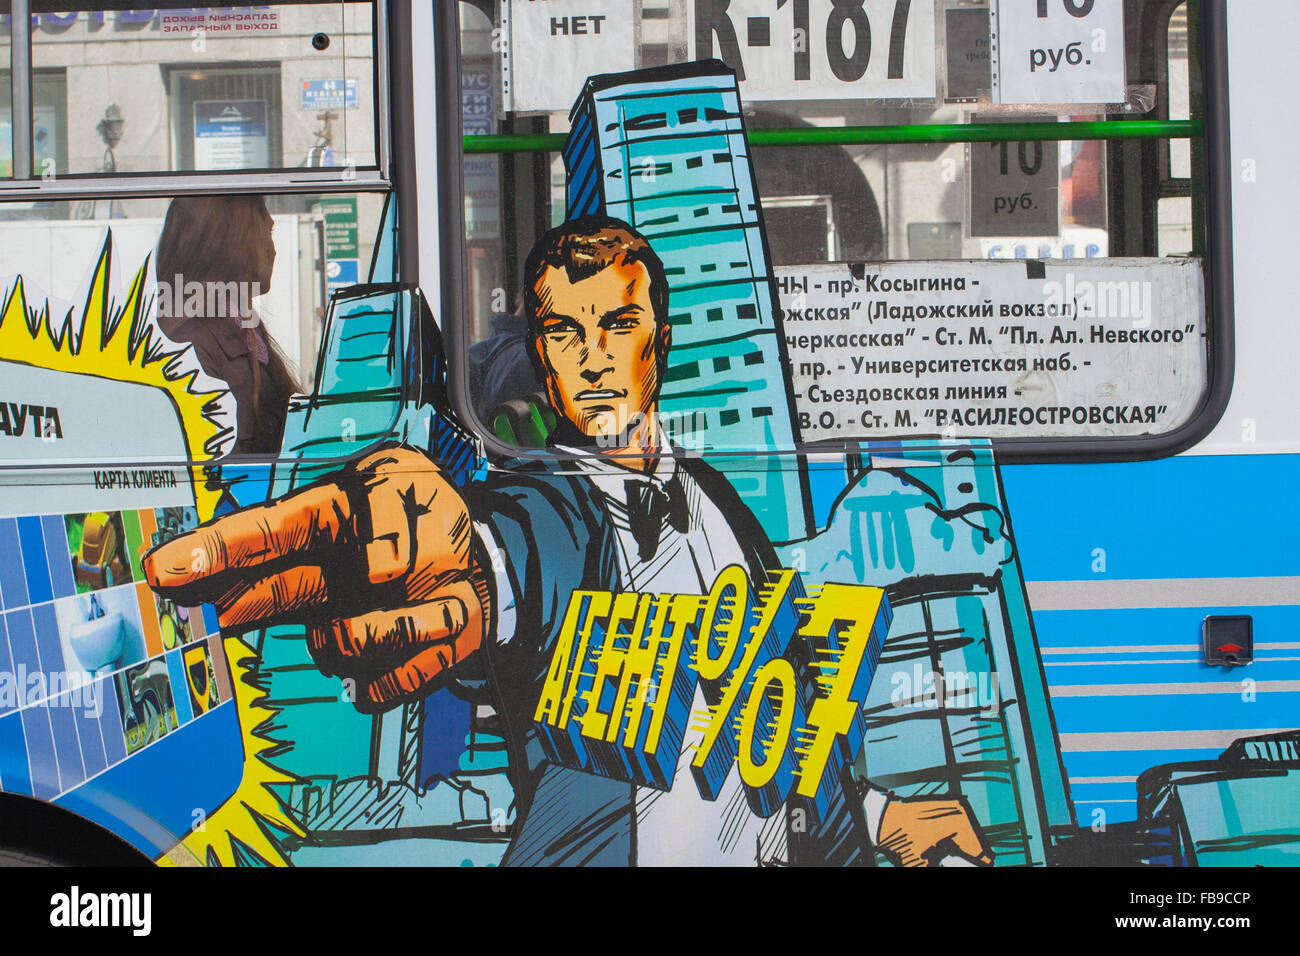 James Bond 007 inspiré la publicité sur bus à Saint-Pétersbourg, Russie Banque D'Images